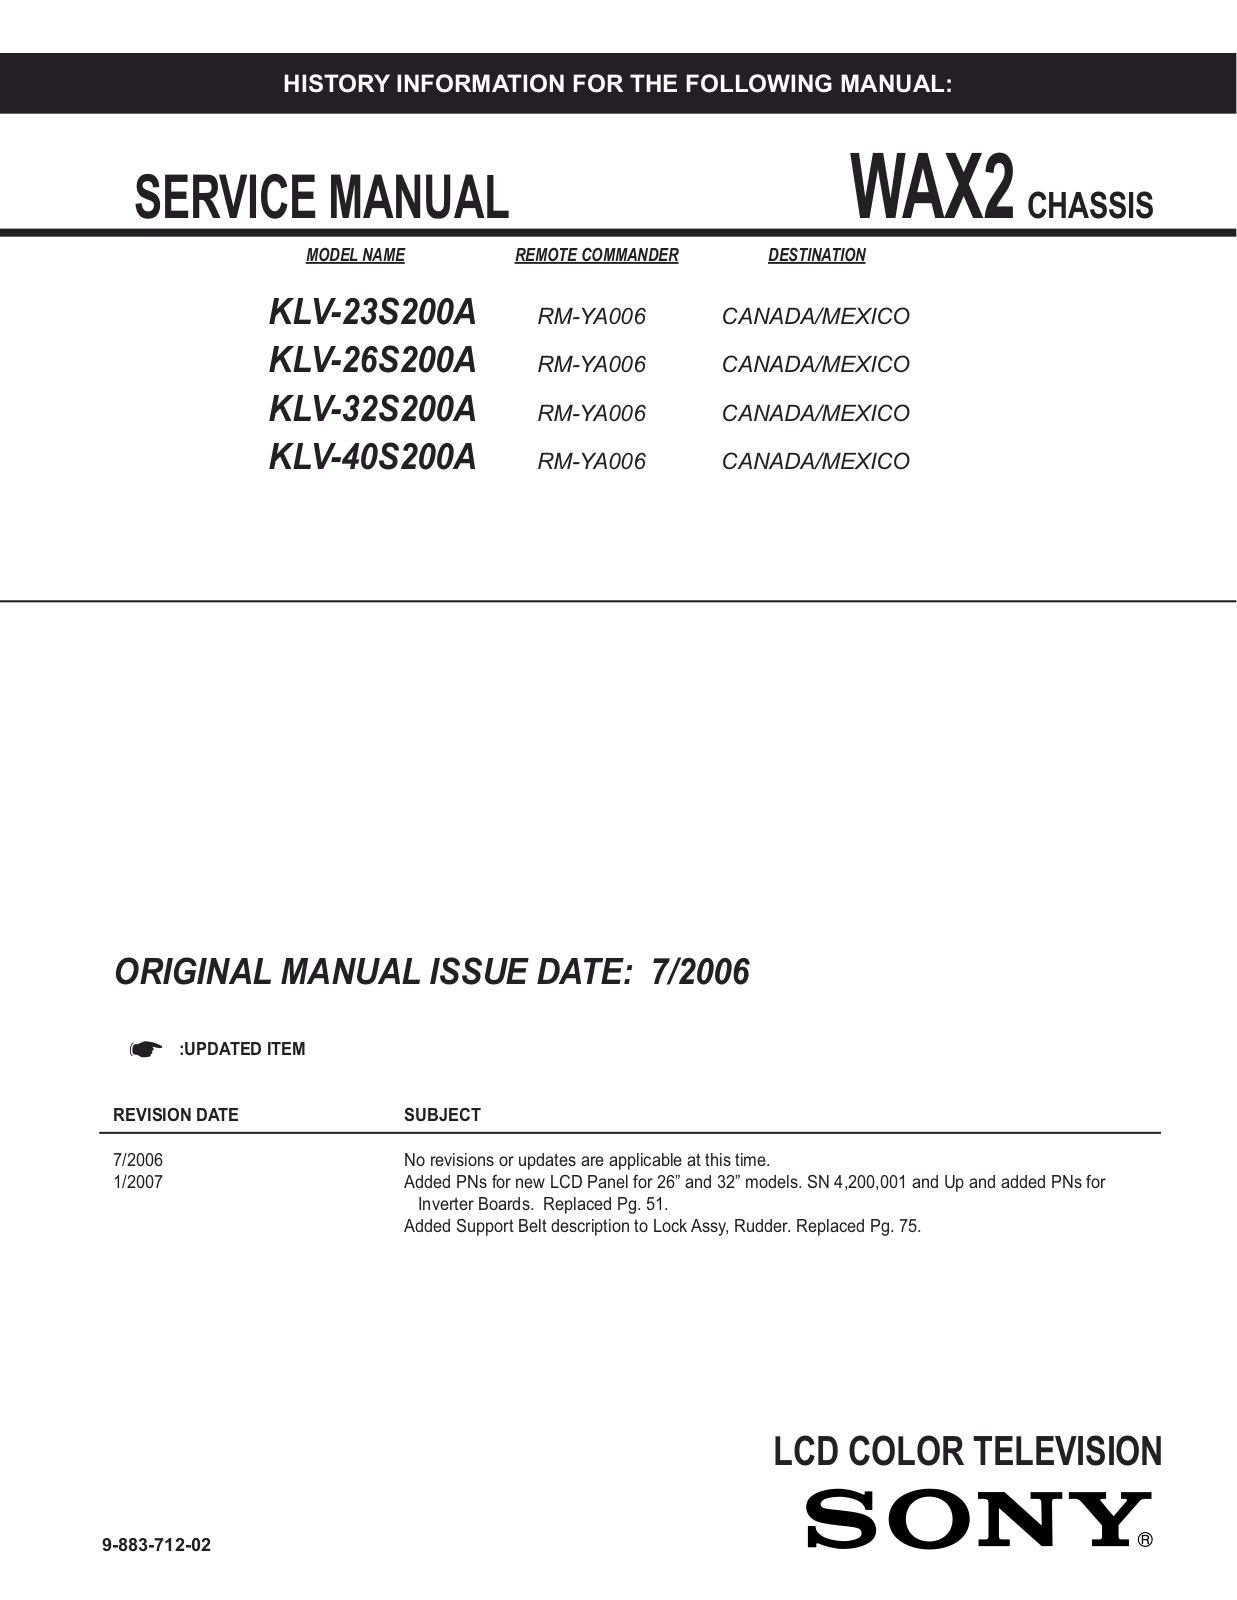 Sony KLV-23S200A, KLV-26S200A, KLV-32S200A, KLV-40S200A Service Manual